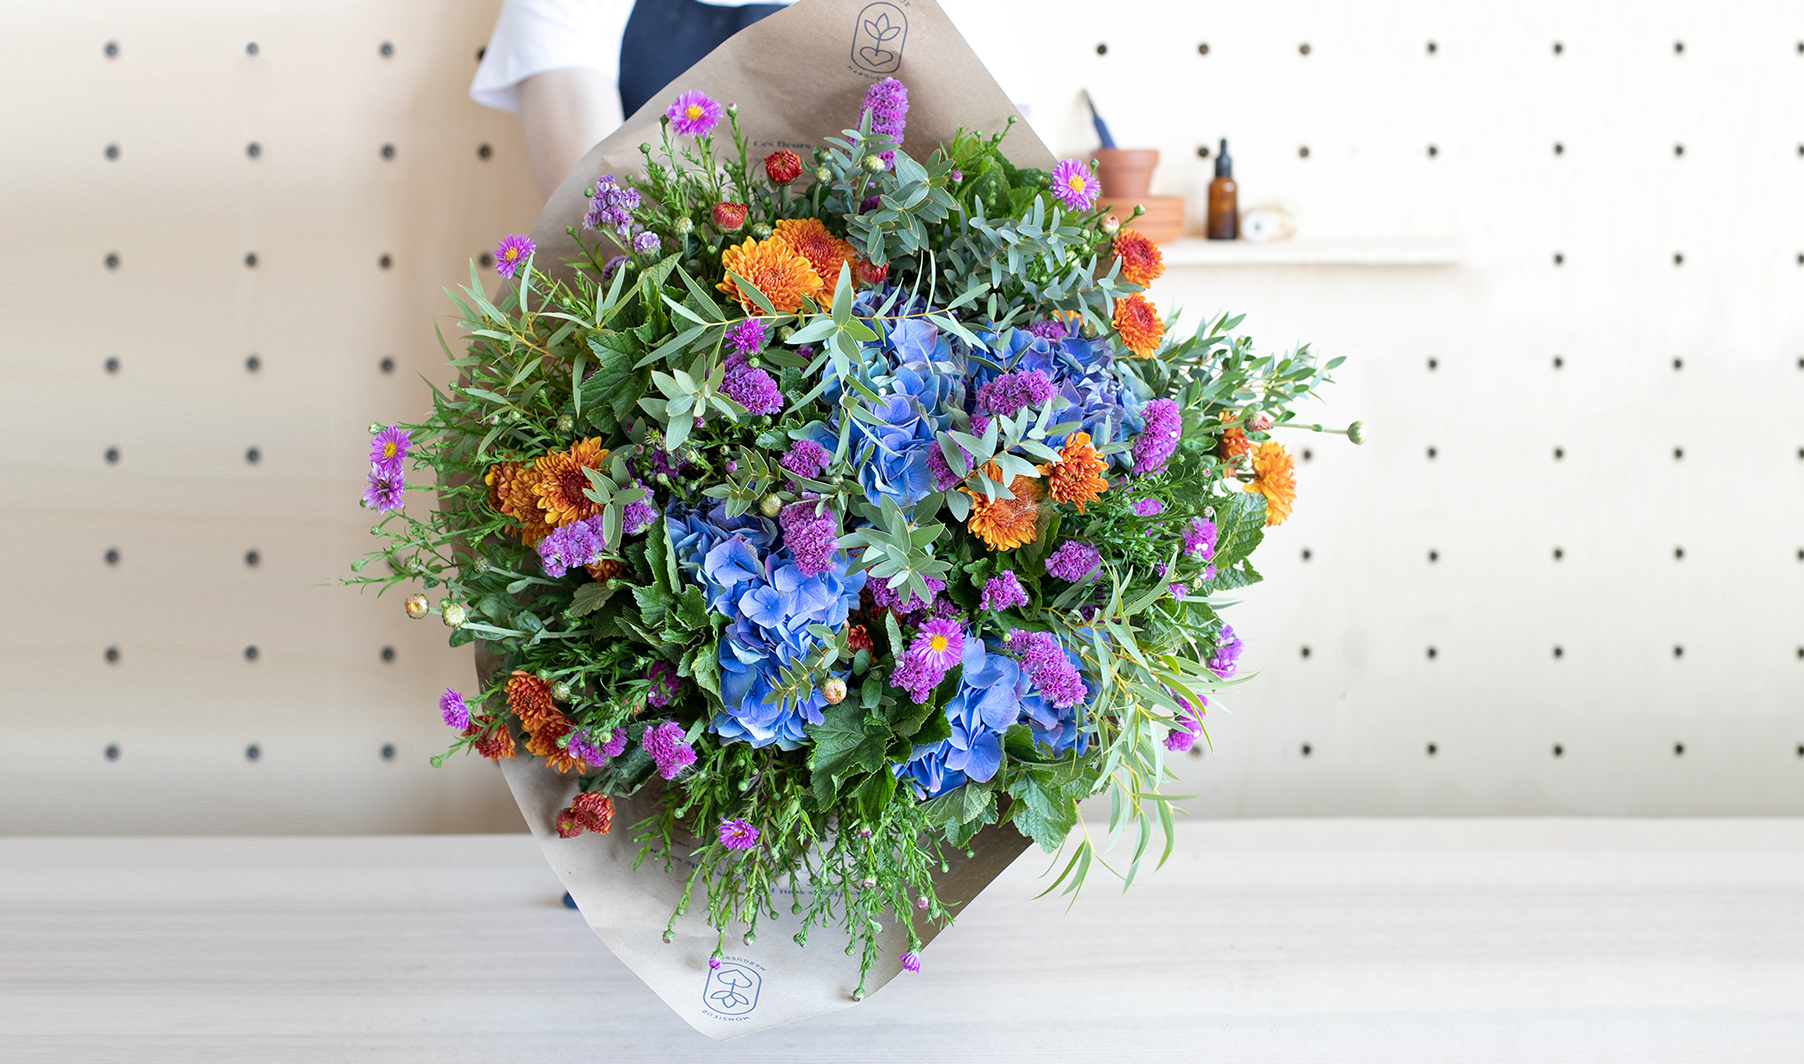 Le bouquet surprise de fleurs fraîches et de saison, livré chez vous au jour de votre choix.